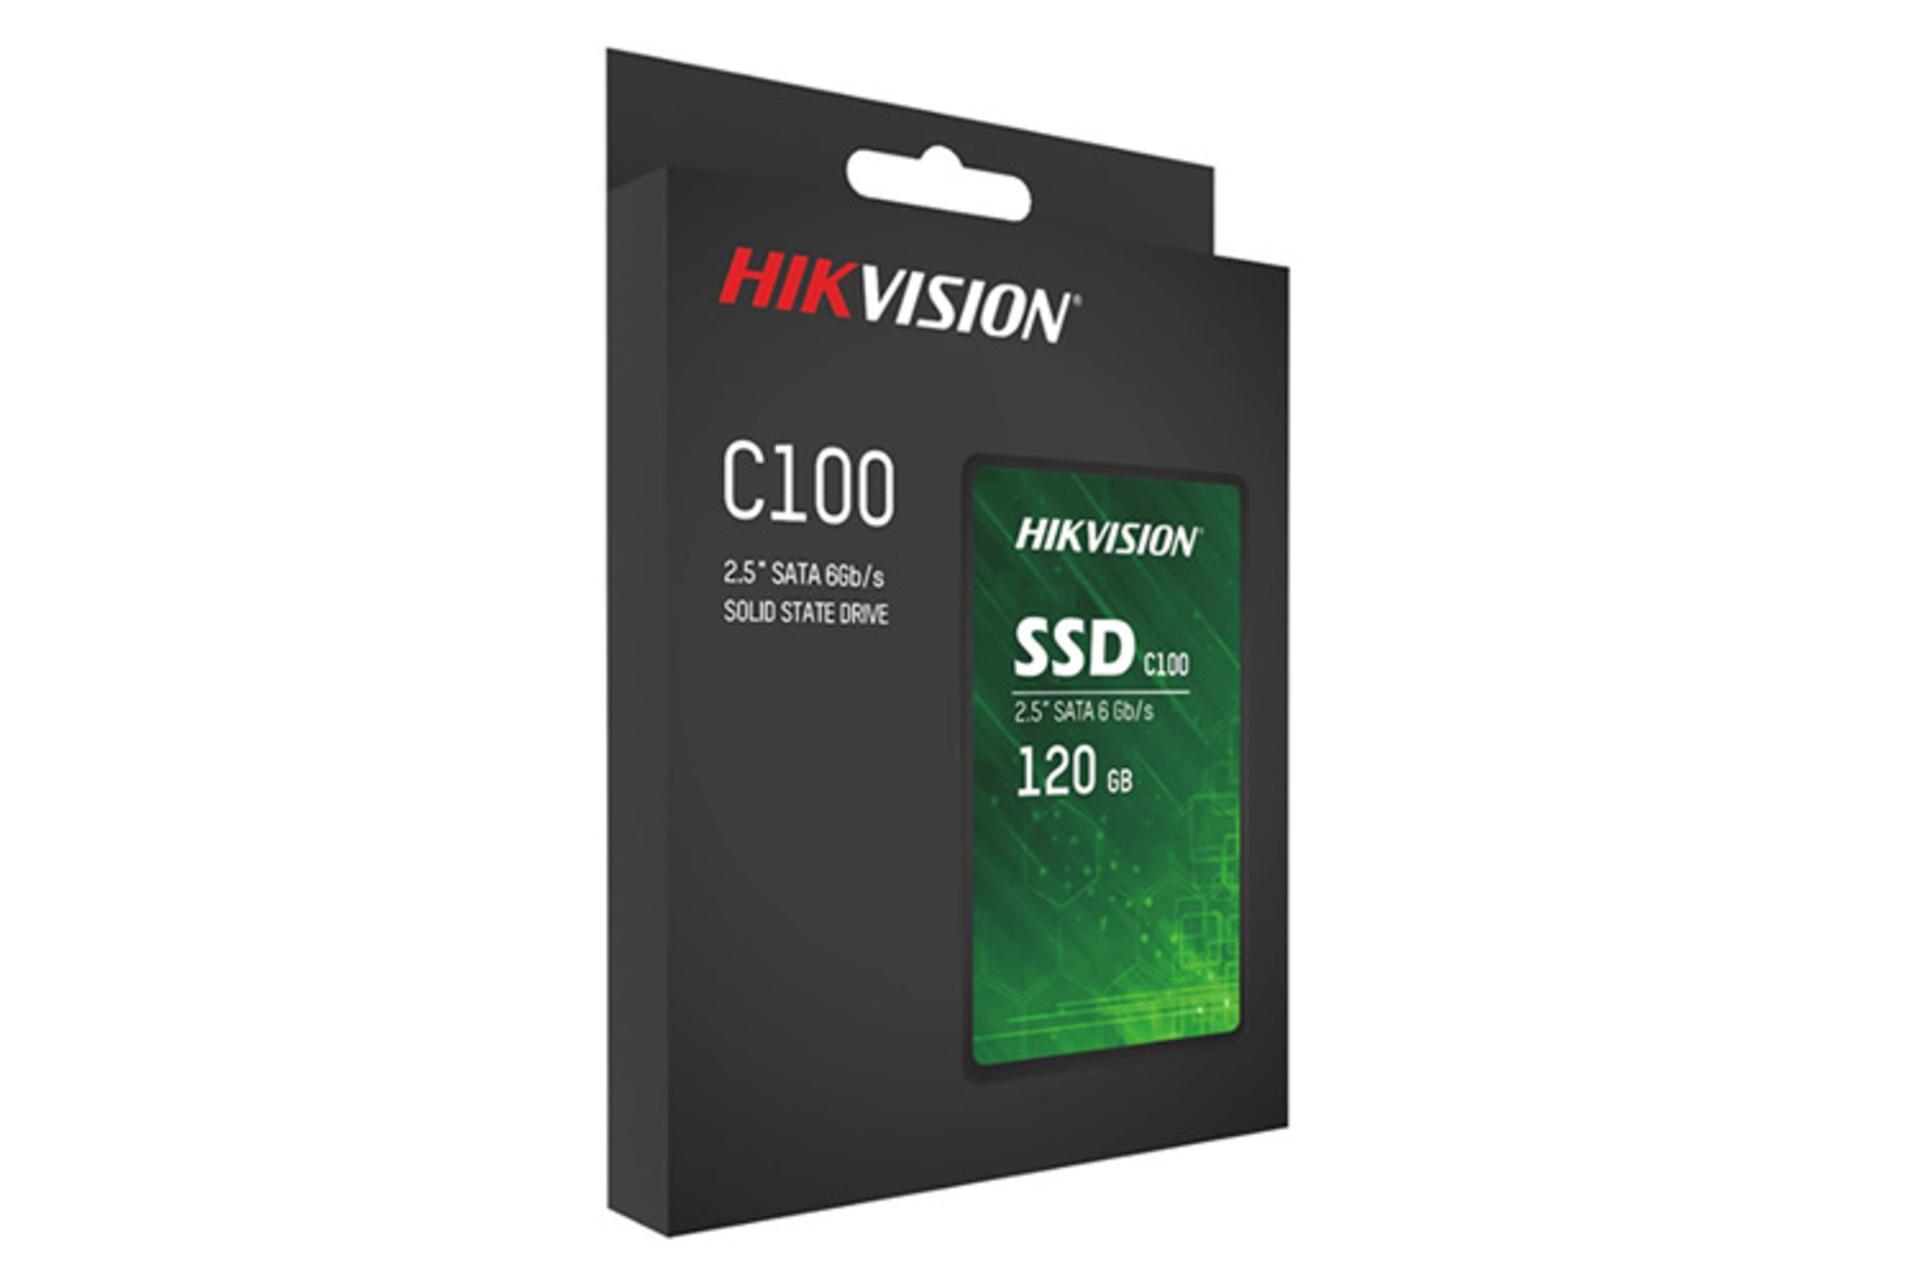 حافظه SSD از نوع SATA 2.5 inch هایک ویژن C100 ظرفیت 120 گیگابایت - بسته بندی و جعبه